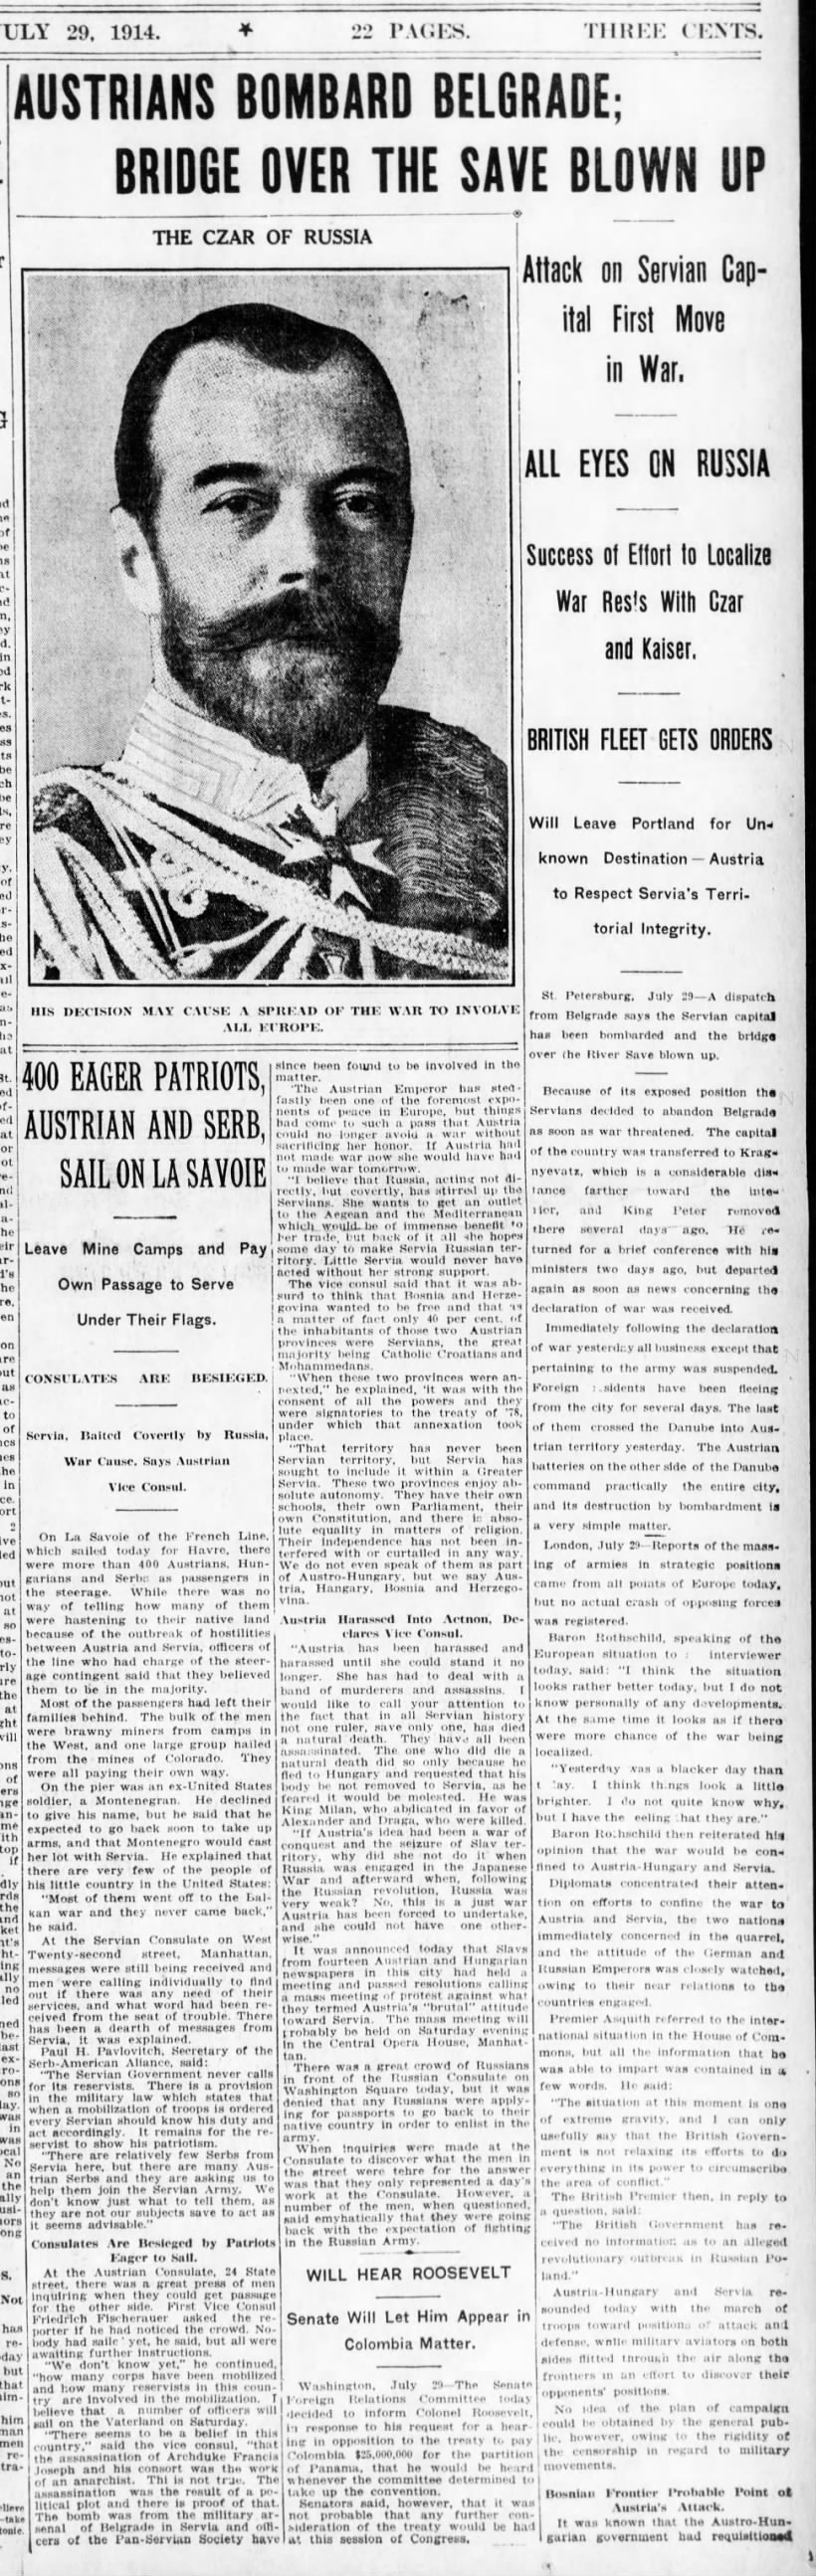 Brooklyn Daily Eagle 29 July 1914 WWI Begins